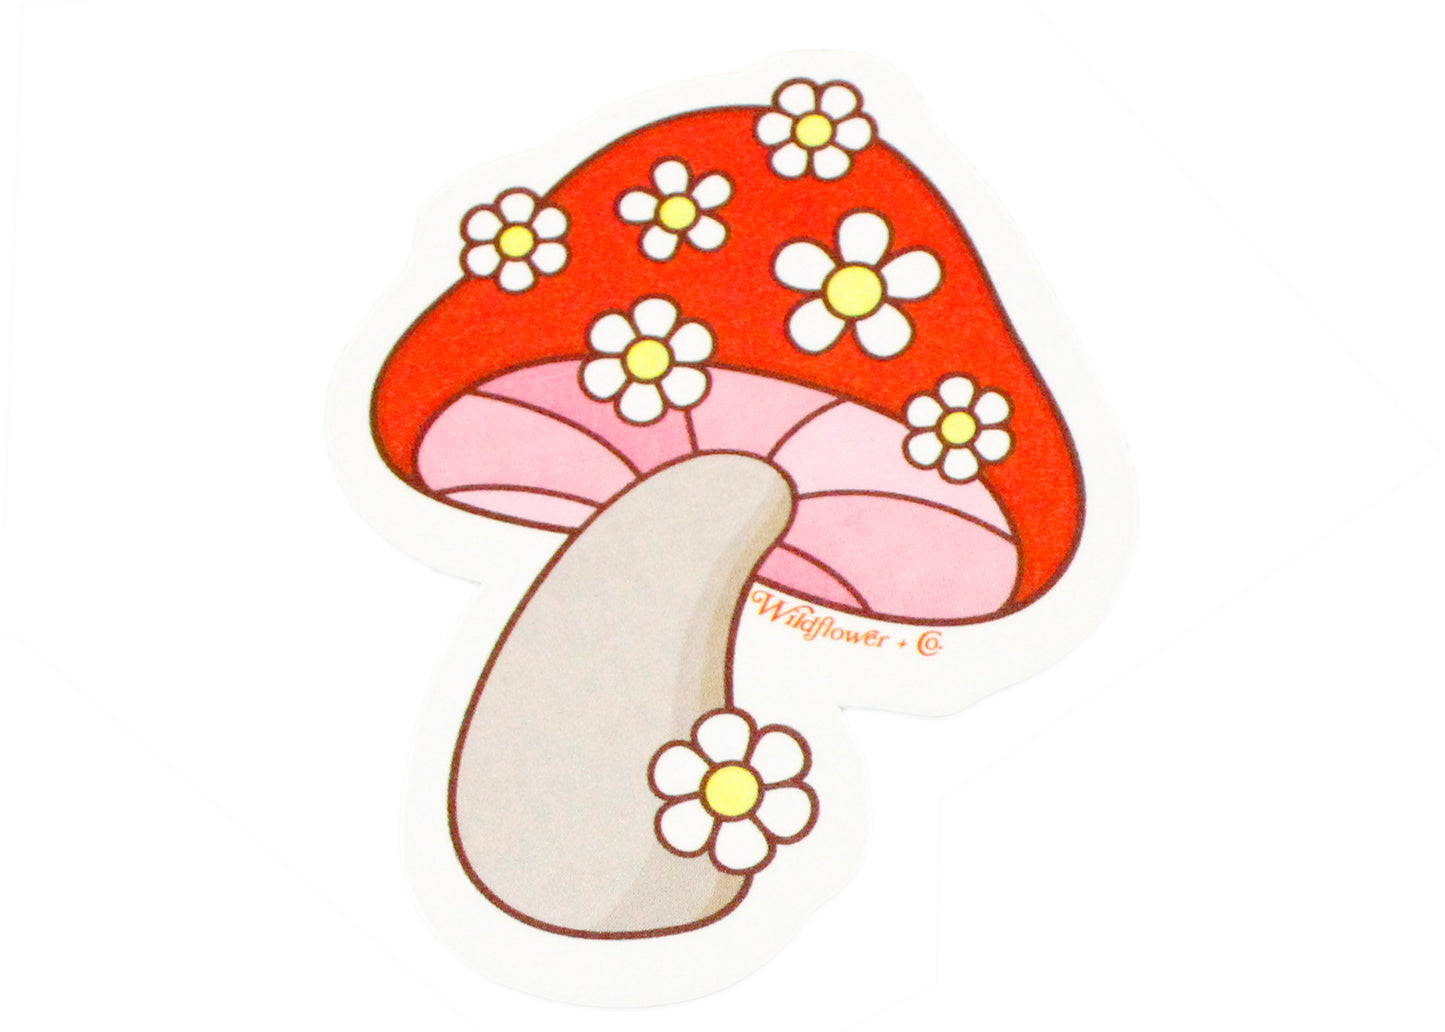 Daisy Mushroom Sticker